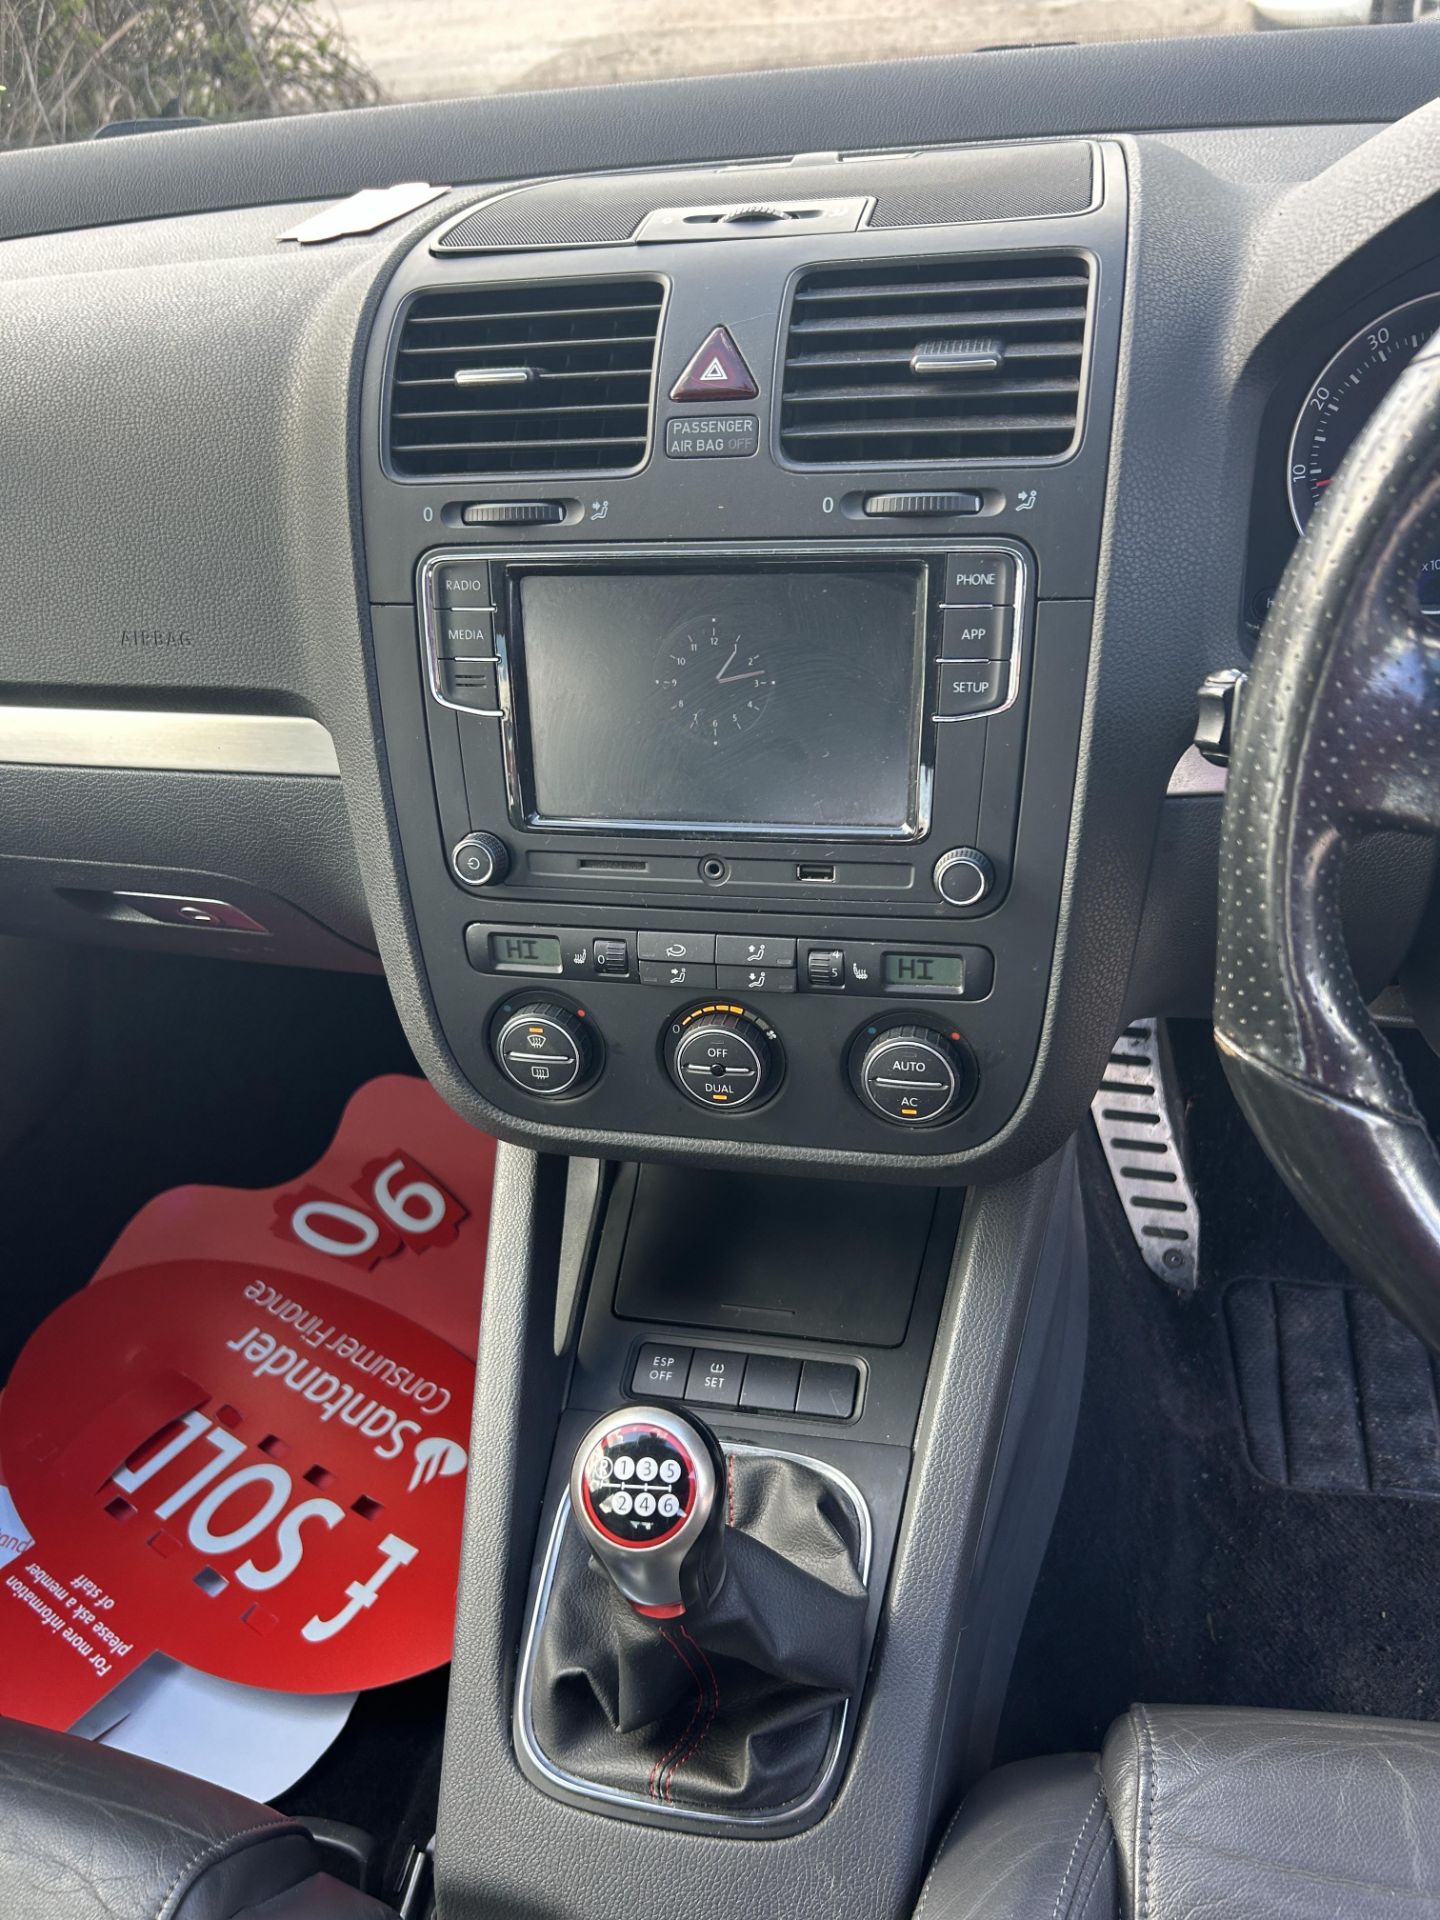 Volkswagen Golf GTI Petrol 5 Door Hatchback | LS08 DBU | 140,243 Miles - Image 11 of 13